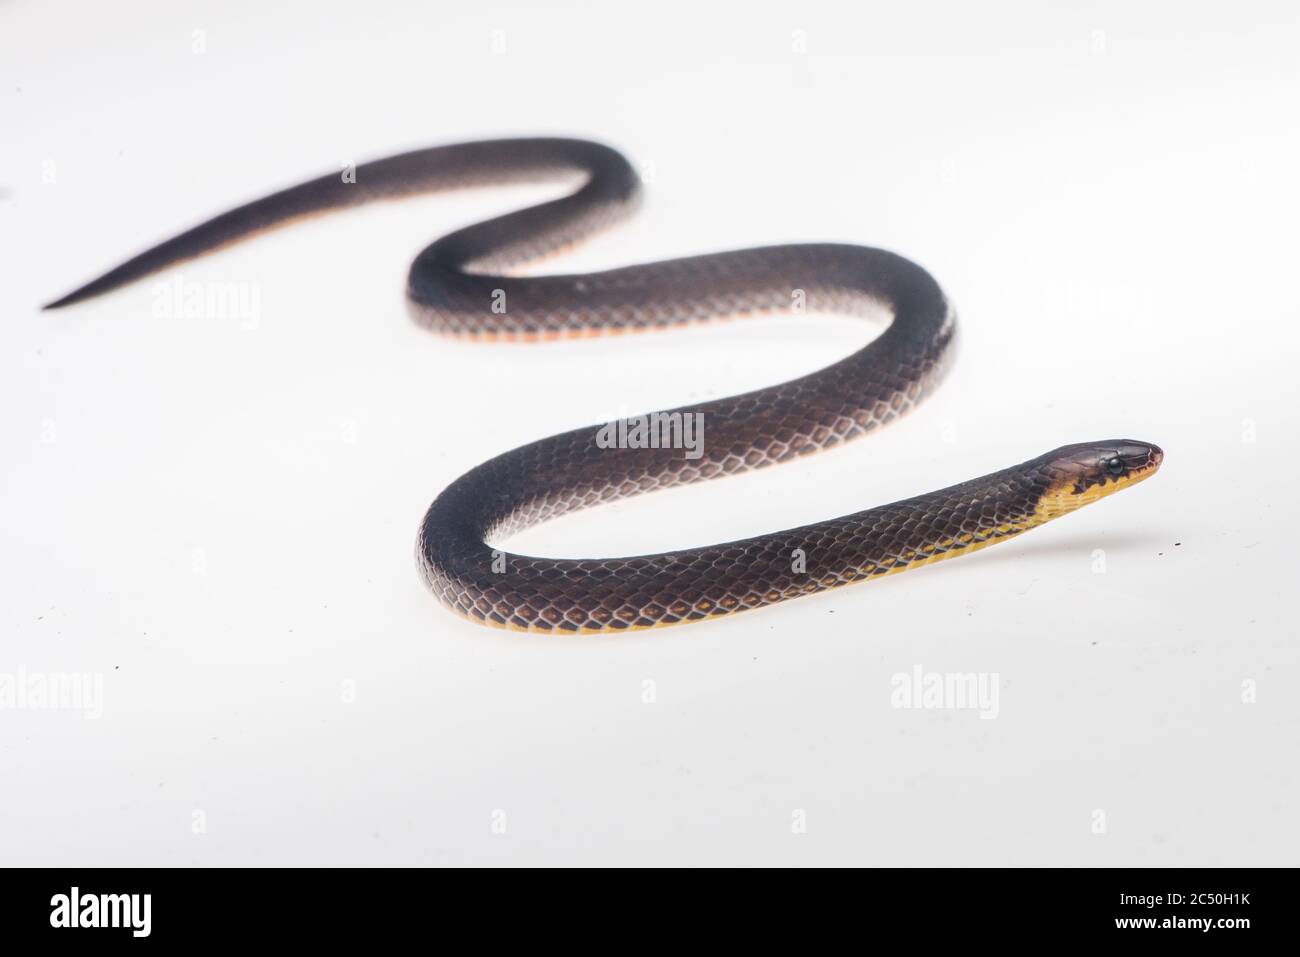 La serpiente molida de Orces (Atractus orcesi), una pequeña serpiente secreta que se encuentra en unos pocos sitios de las estribaciones amazónicas del Ecuador. Foto de stock